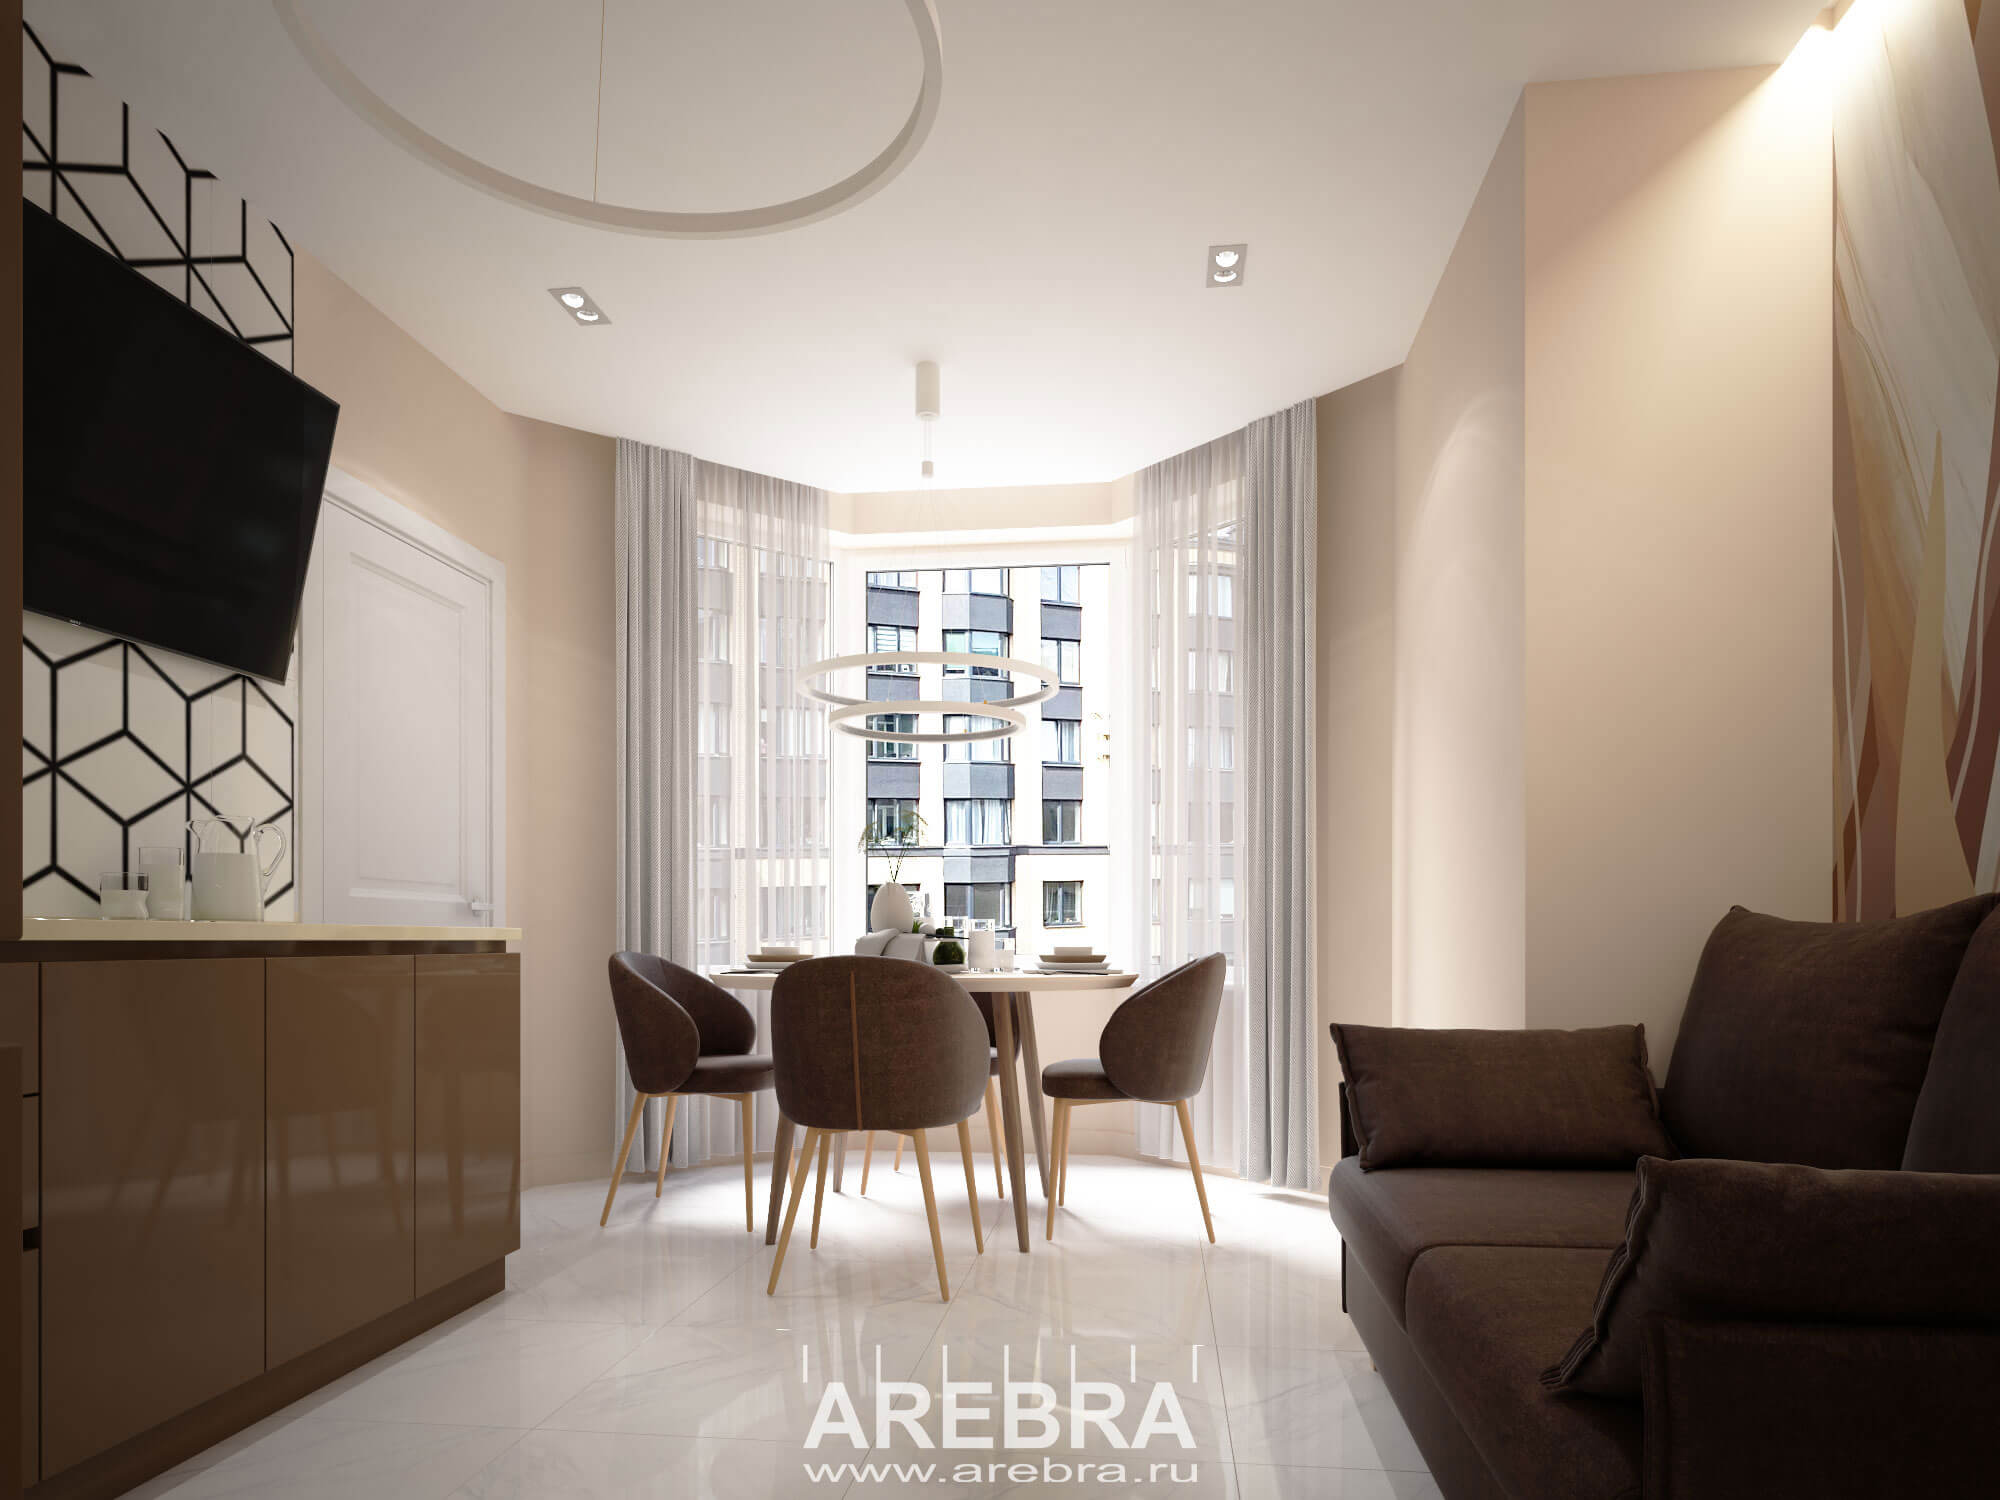 Дизайн проект интерьера квартиры общей площадью 69,7м2, г. Санкт-Петербург, ул. Малая Бухарестская, д12